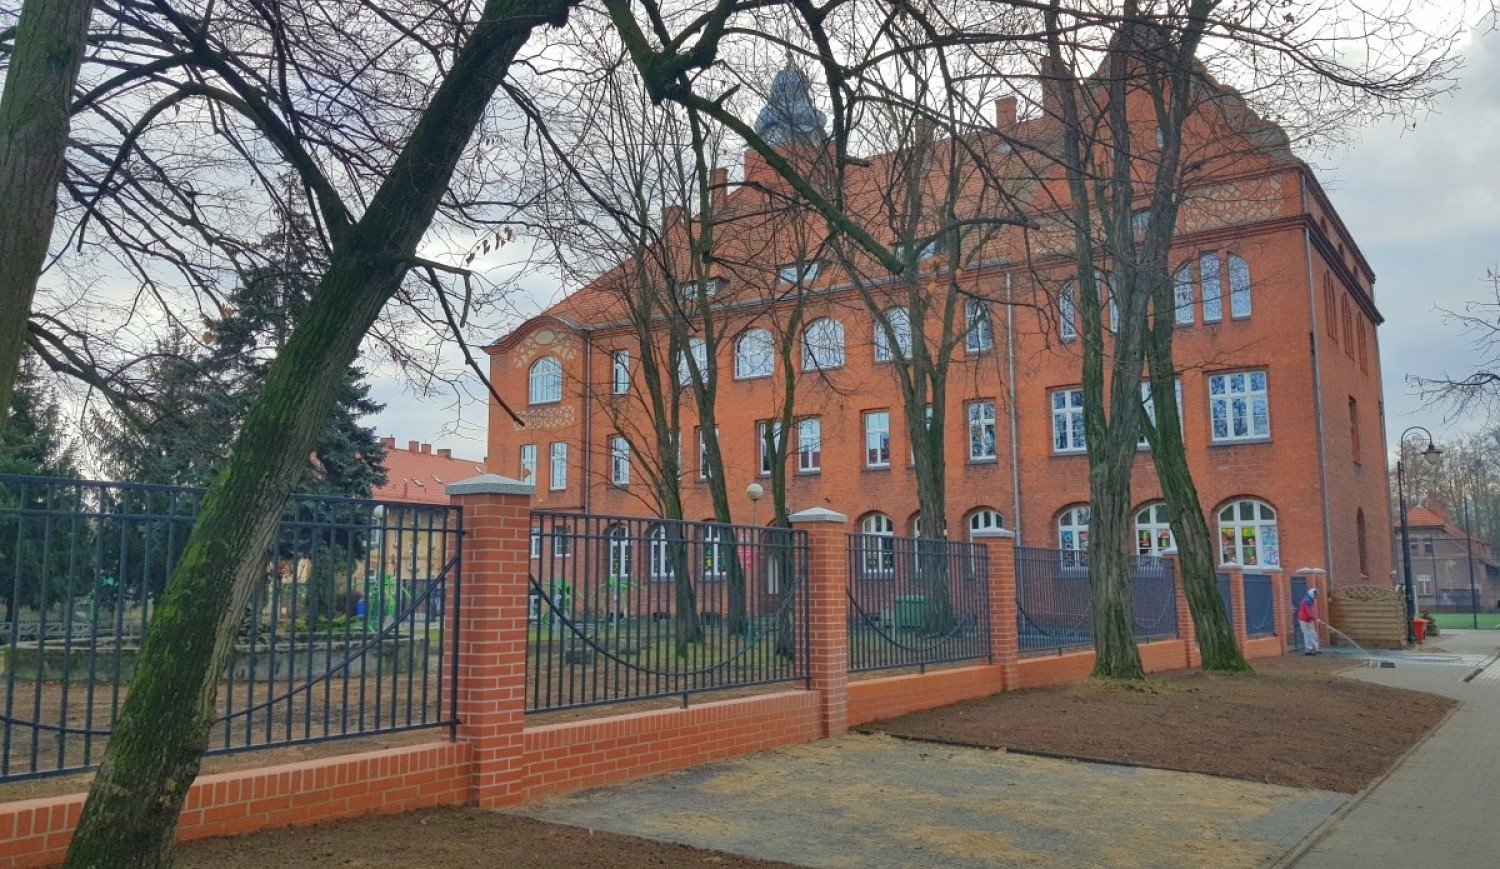 Szkoła Podstawowa Nr 1 Police Szkoła Podstawowa nr 1 w Wolsztynie zyskała nowe ogrodzenie | Wolsztyn